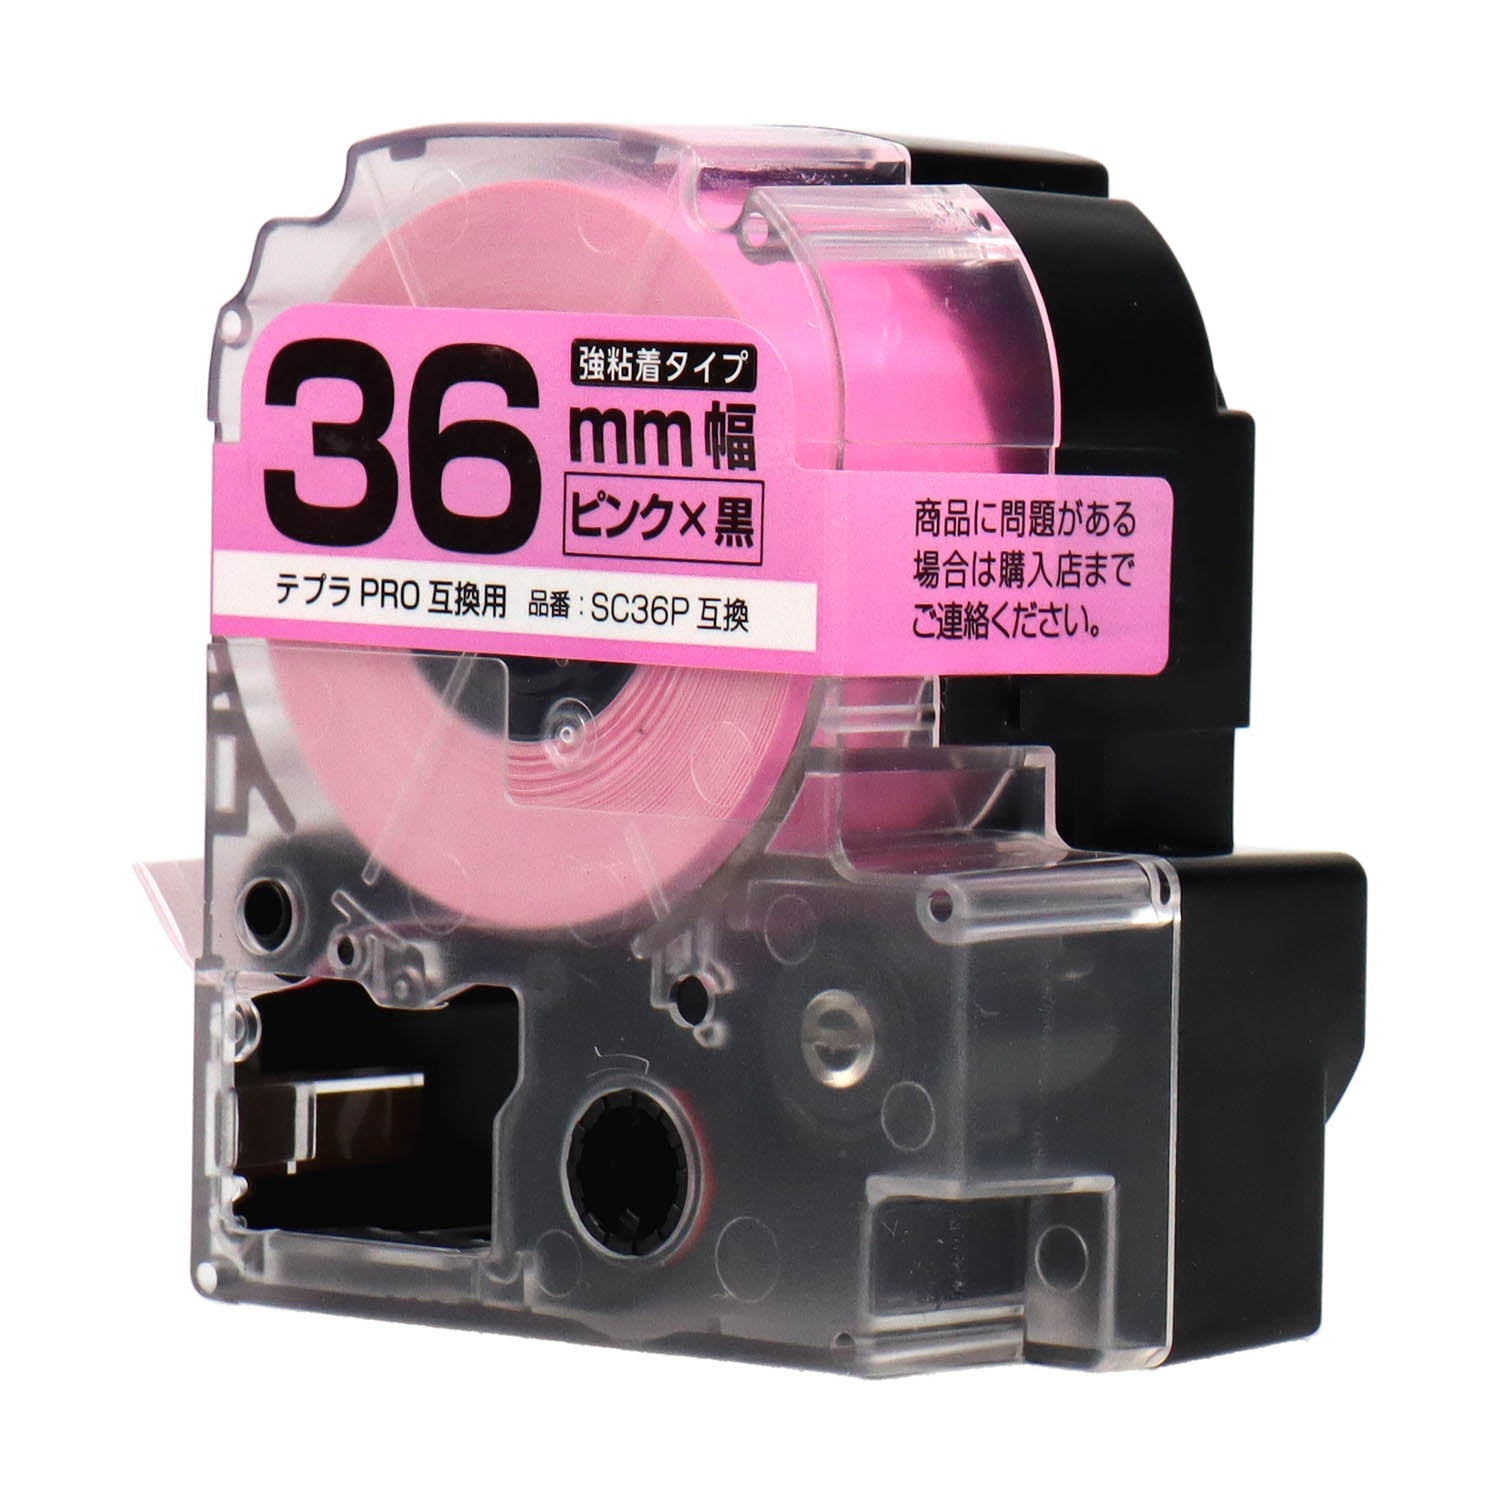 テプラPRO用互換テープカートリッジ ピンク×黒文字 36mm